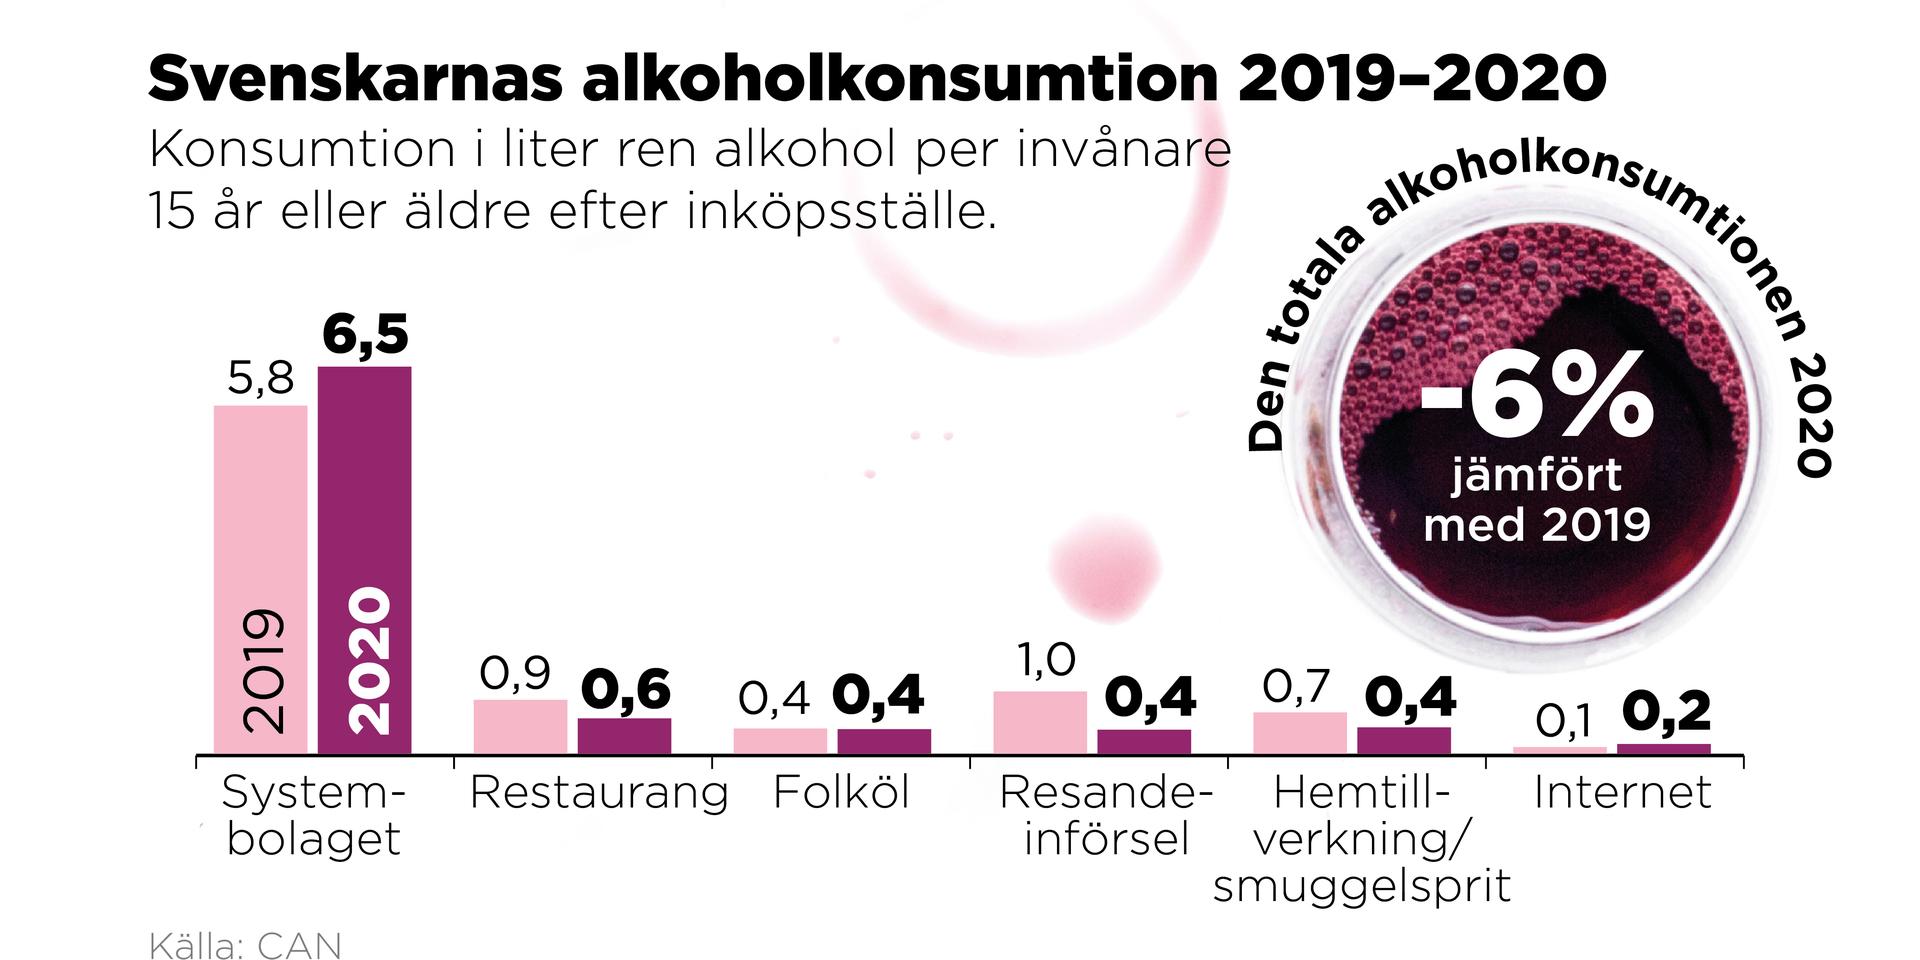 Totalt sett minskade alkoholkonsumtionen i Sverige under det första pandemiåret, trots att Systembolagets försäljning ökade.